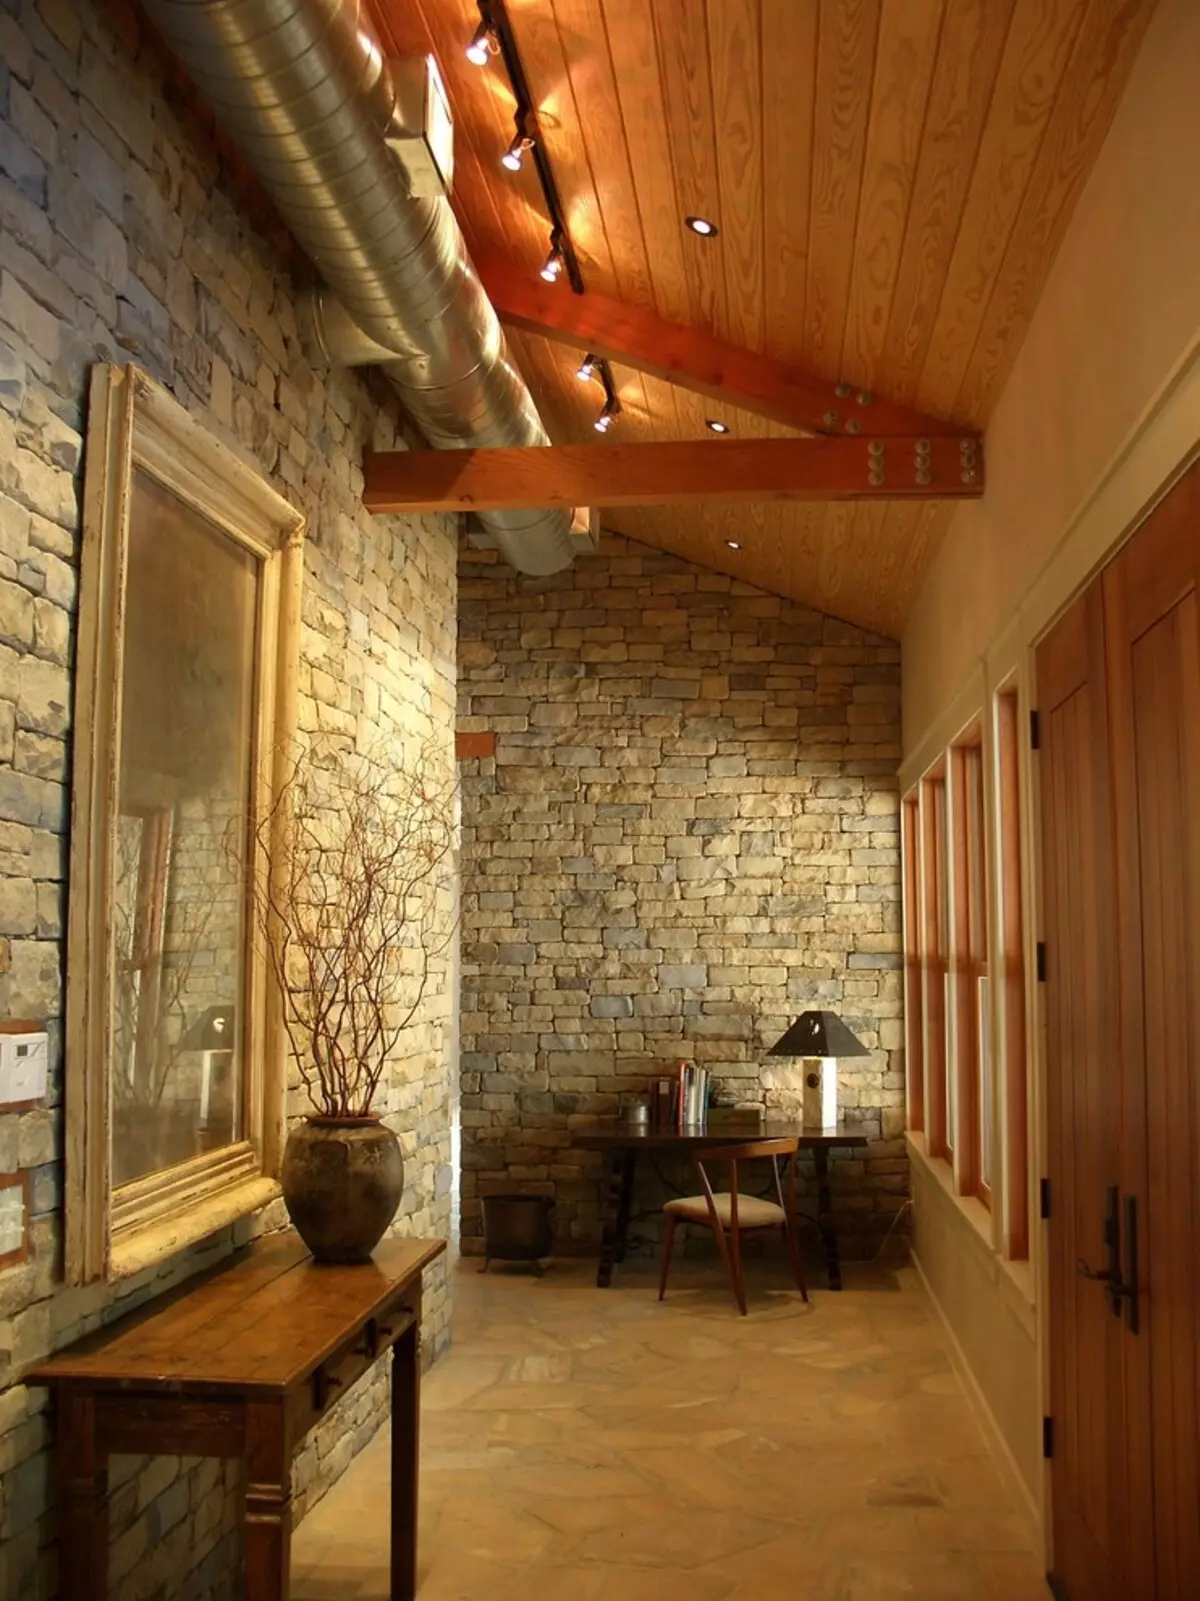 Hall de entrada em estilo loft (76 fotos): cabide e móveis no interior de um pequeno corredor, um design corredor com uma parede de tijolos, escolher um banco e roupeiros 9088_44